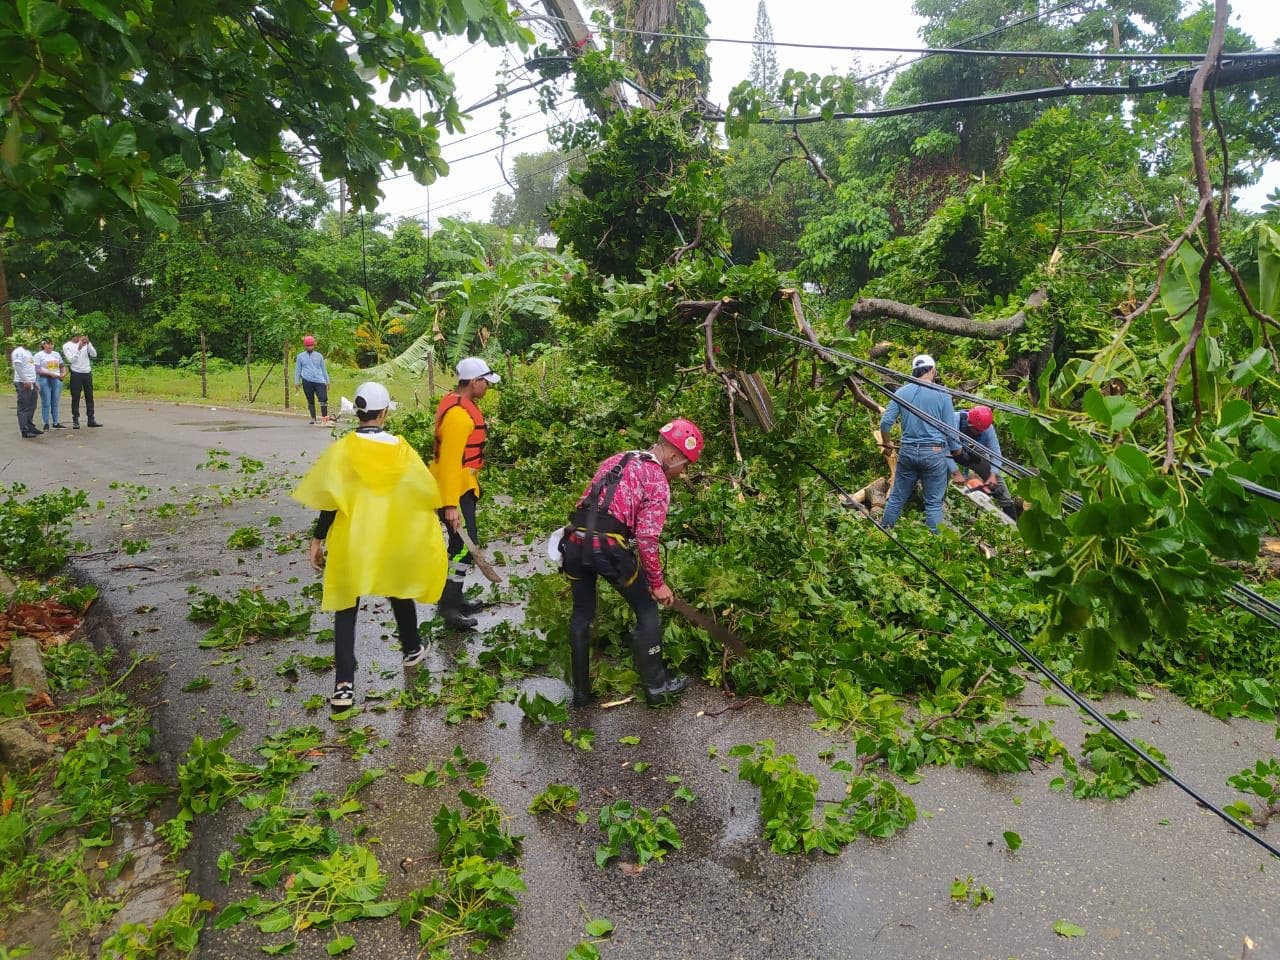 Fiona derribó árboles que bloquearon vías y dañaron viviendas en Puerto Plata